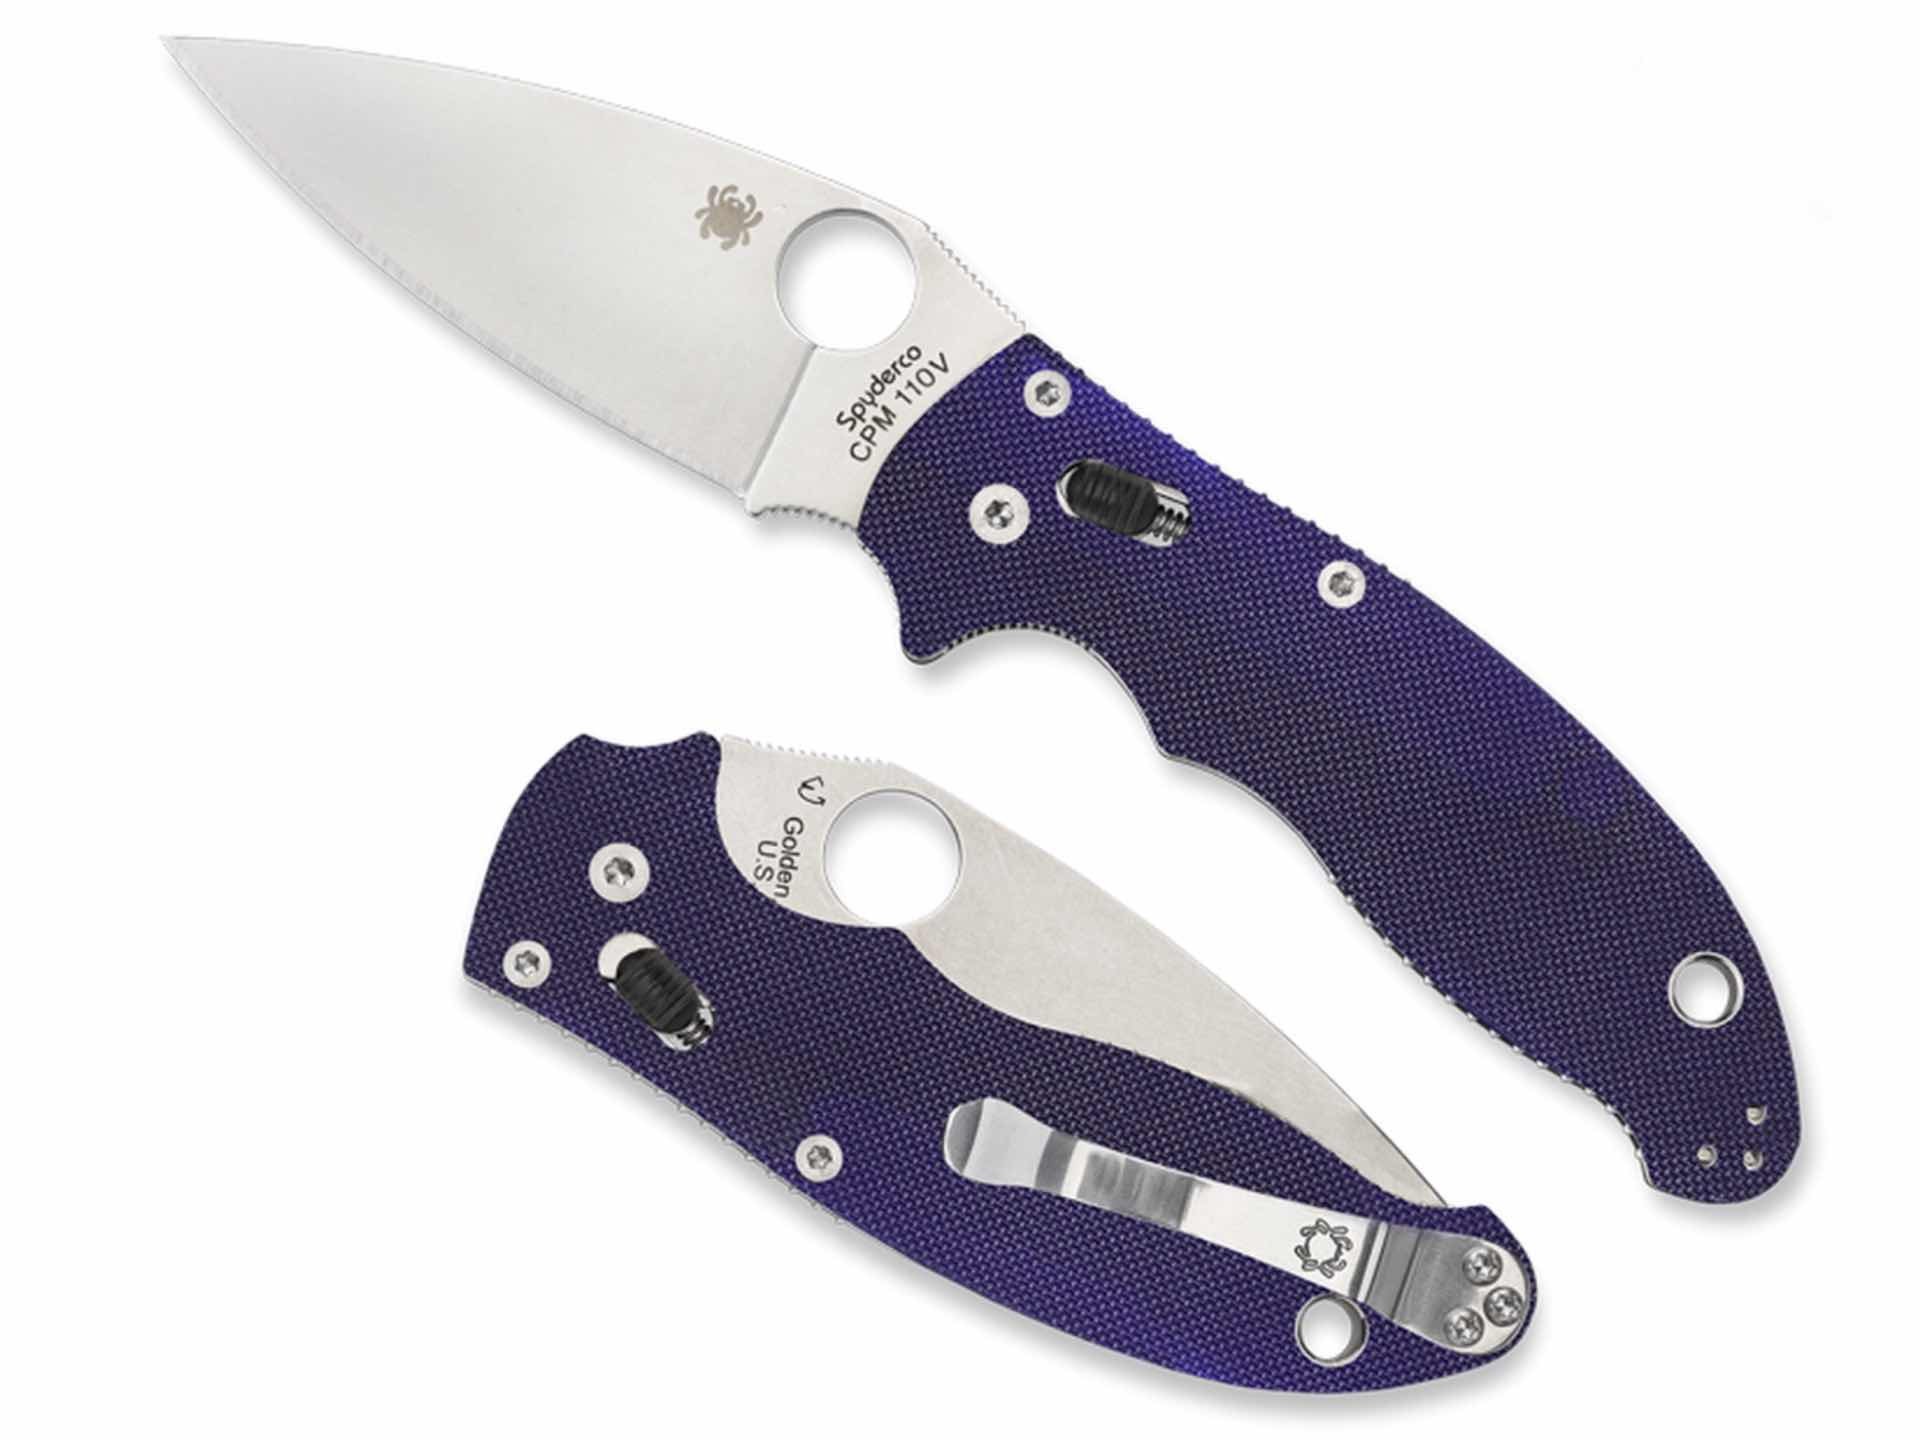 Spyderco “Manix 2” folding knife in Midnight Blue. ($145)